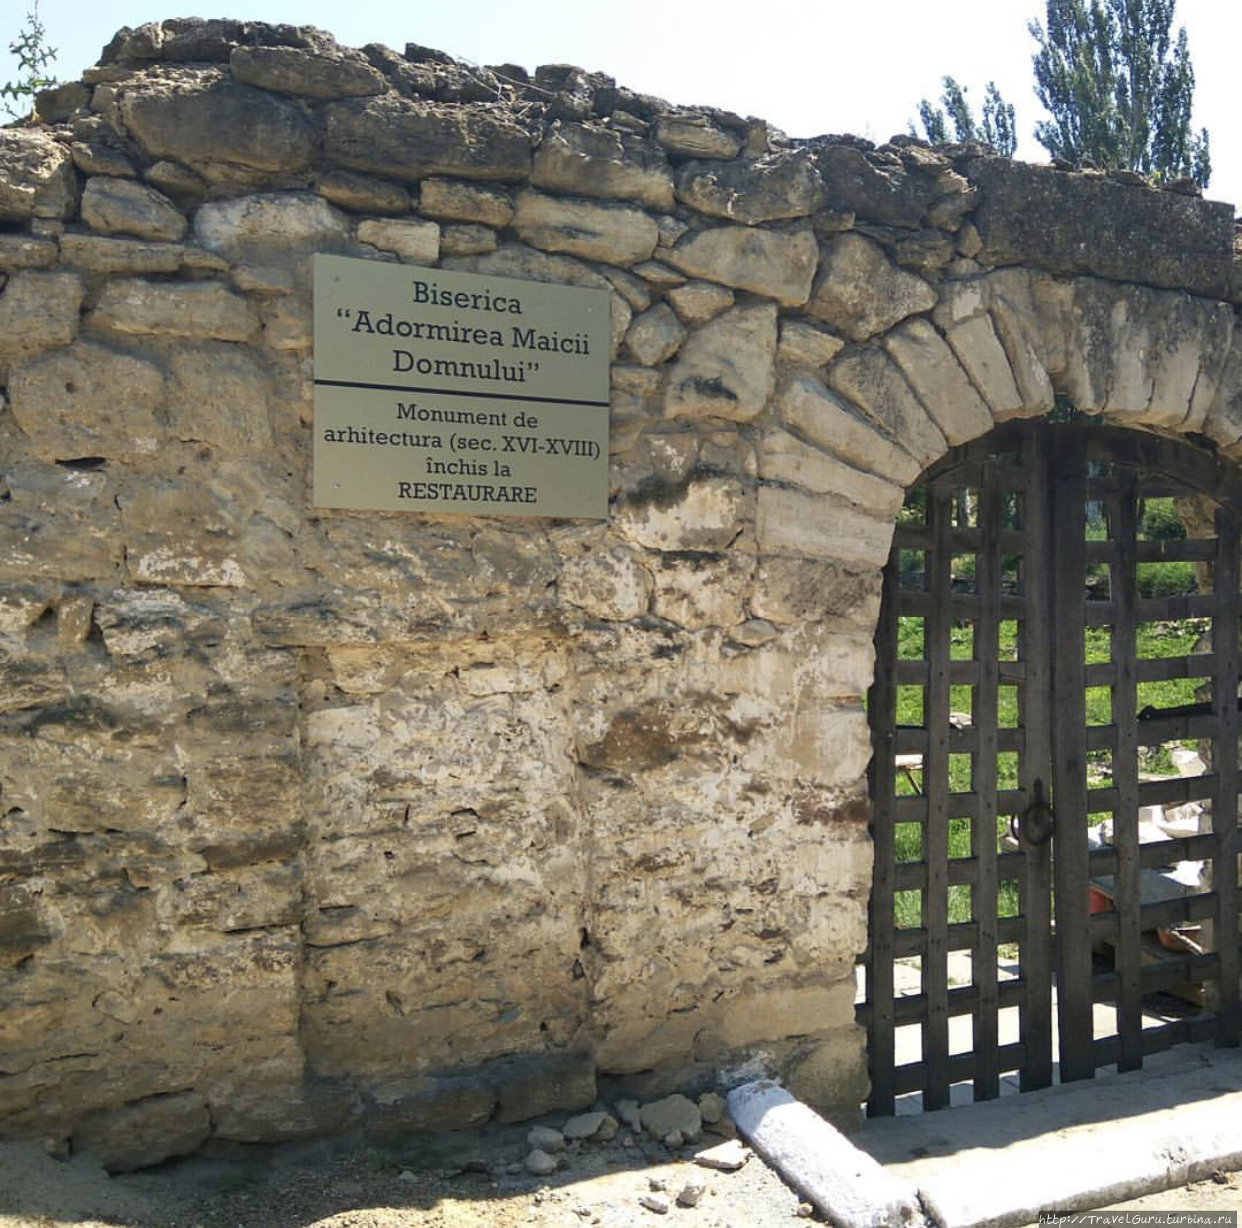 Памятник архитектуры 16-18 веков. Находится на реставрации. Каушаны, Молдова